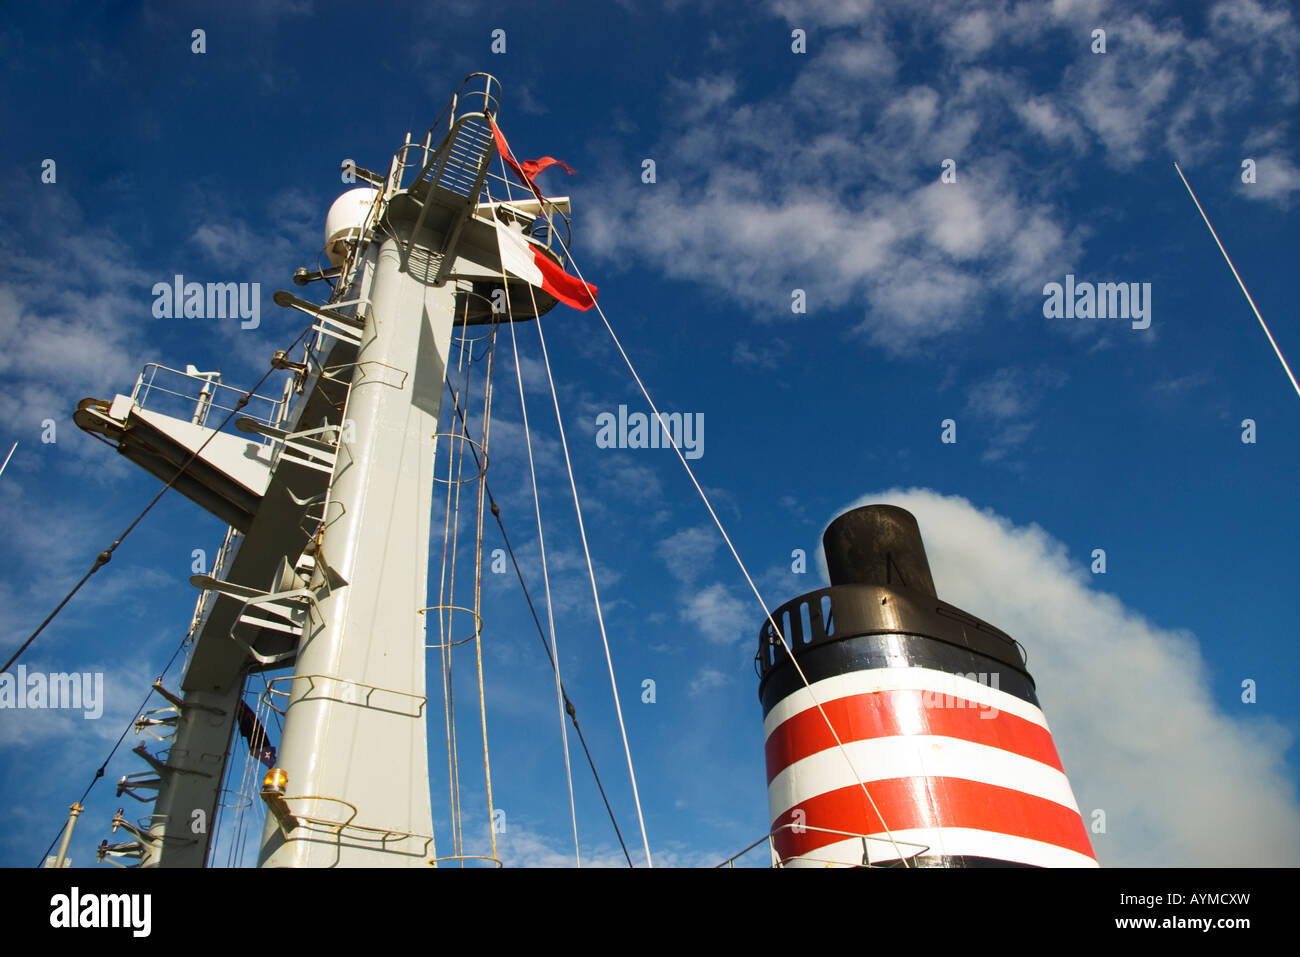 Ein Schiff Trichter und Mast mit Rauch aus dem Trichter. Die Flagge zeigt an, dass das Schiff ein Pilot an Bord hat. Stockfoto